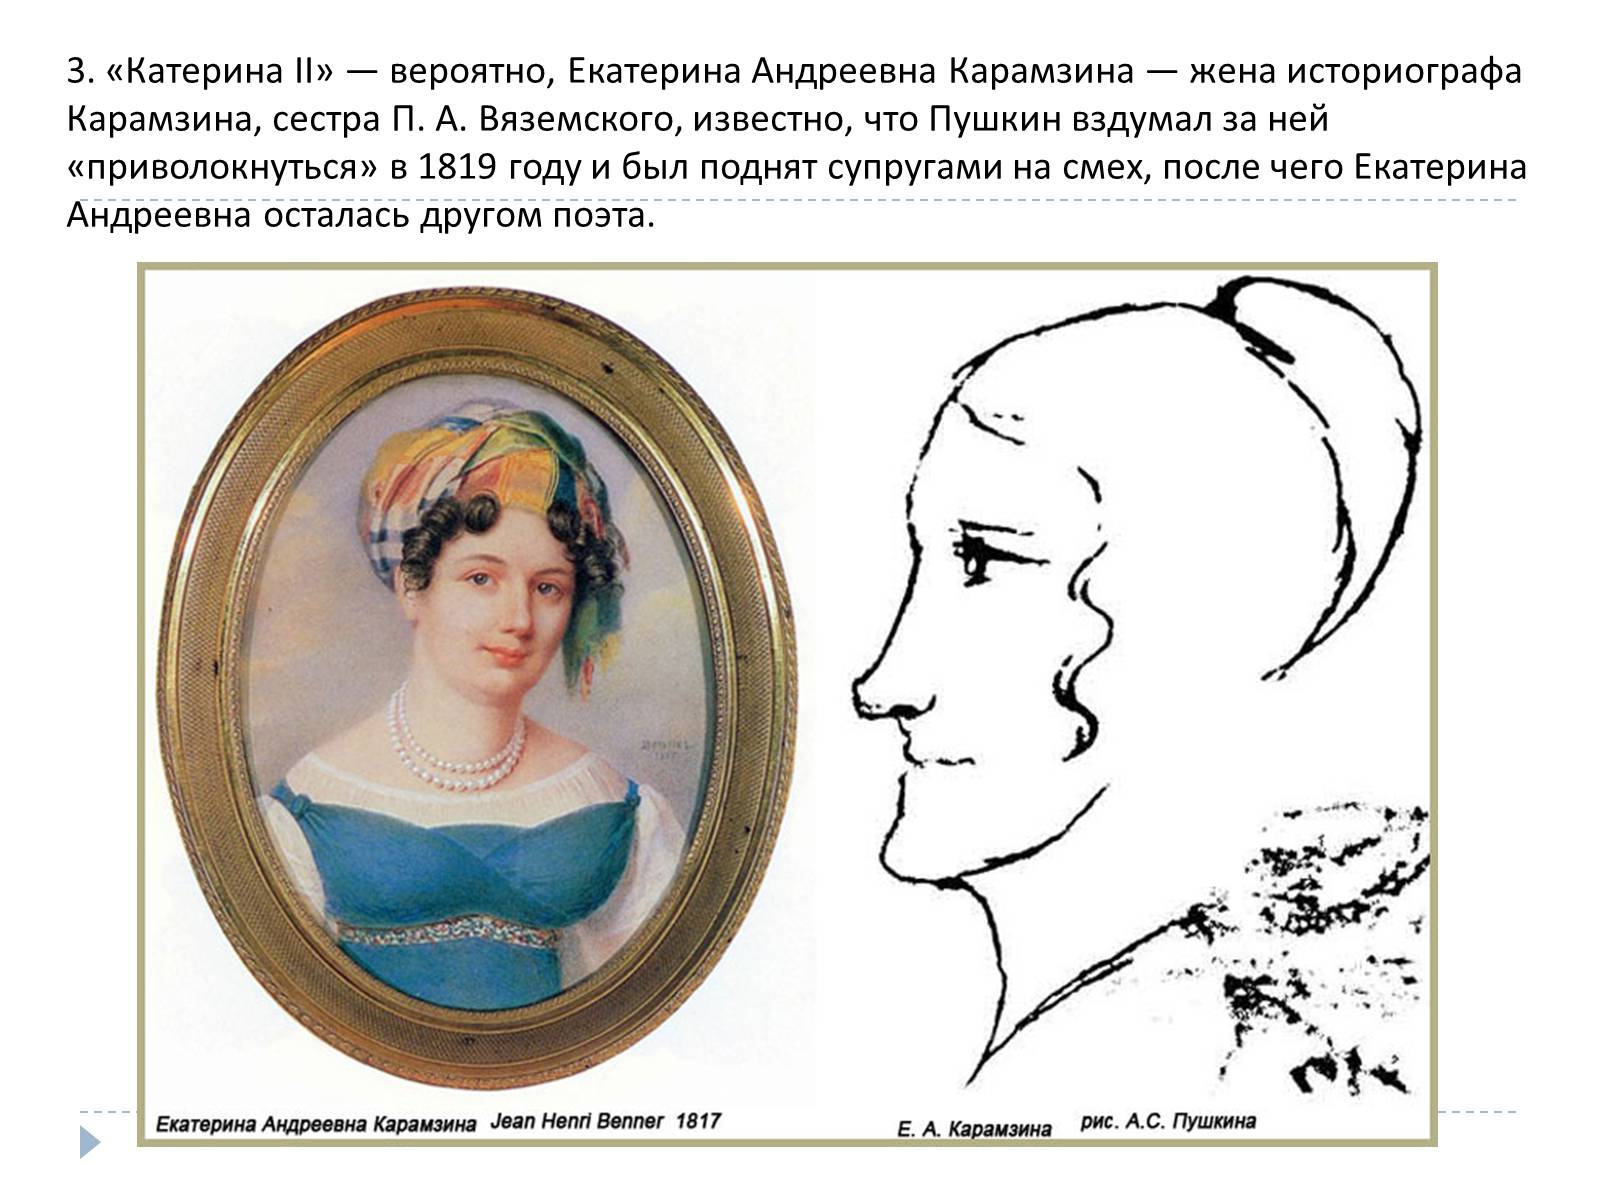 Екатерина Андреевна Карамзина и Пушкин